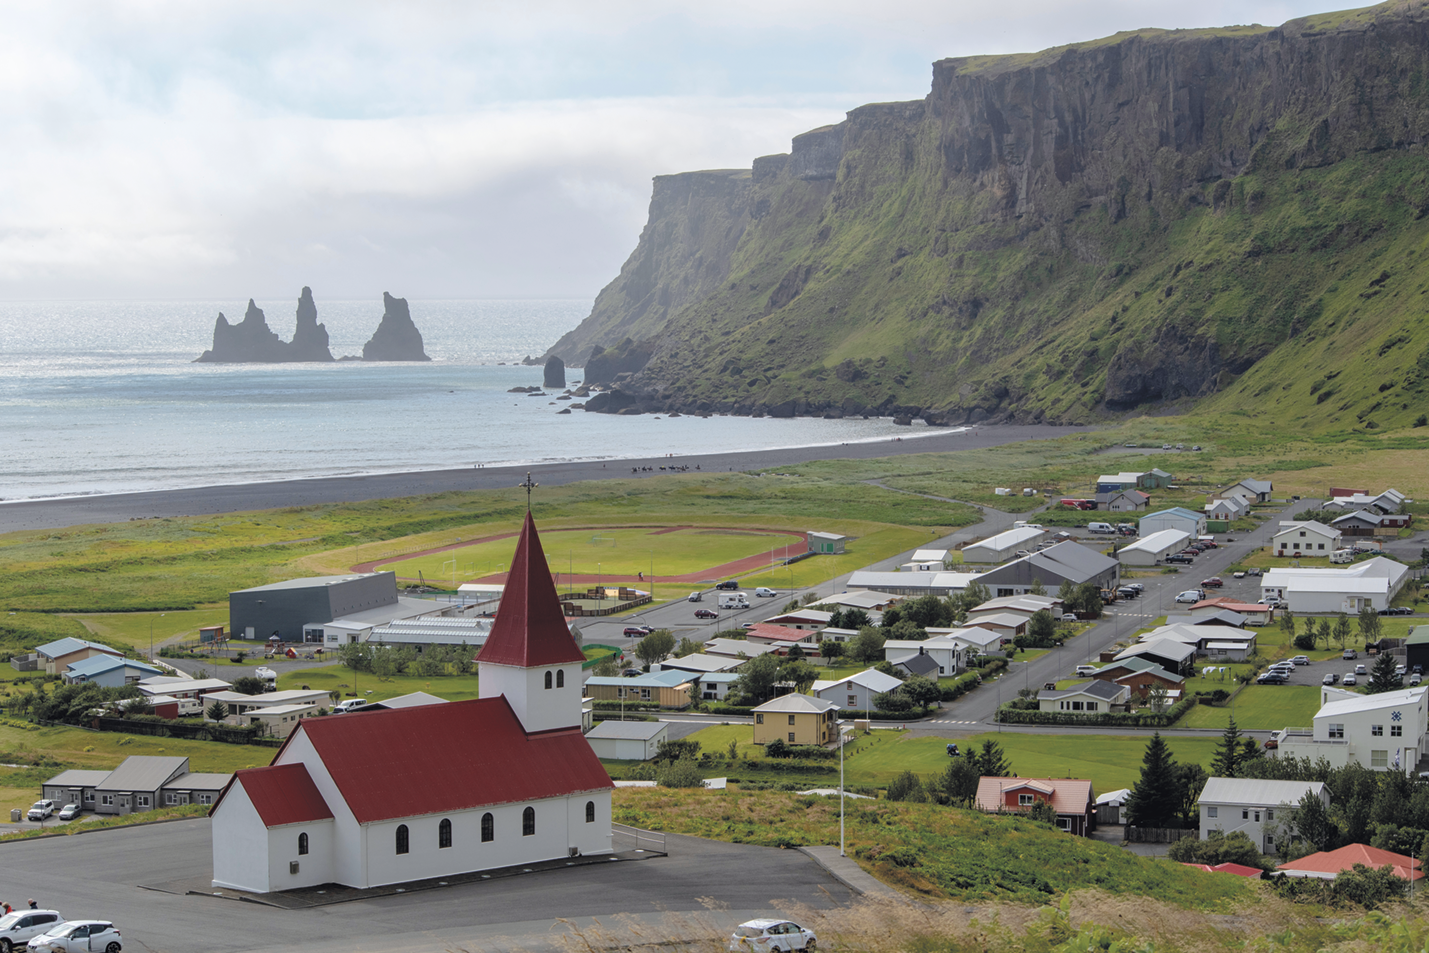 Fotografia. Vista do alto. À esquerda, uma pequena igreja com telhado vermelho, em frene a ela, casas divididas em quarteirões. À esquerda, o mar com formações rochosas e à direita, montanhas cobertas por vegetação.